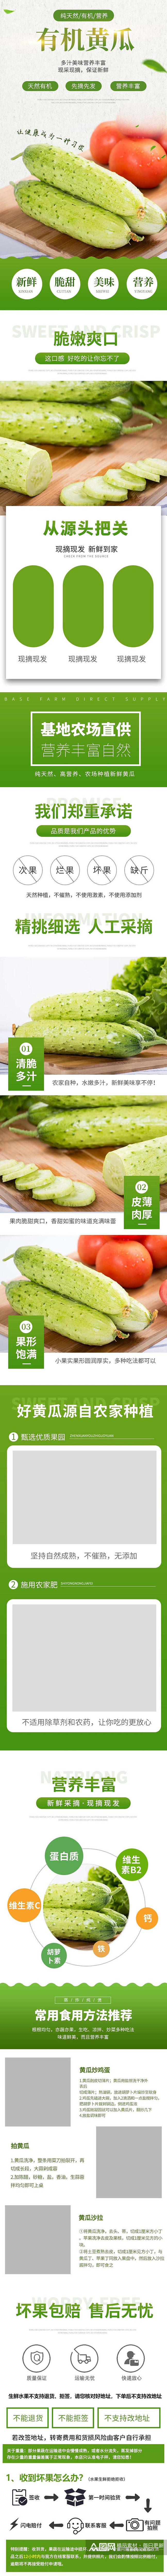 有机黄瓜蔬菜手机版详情页素材